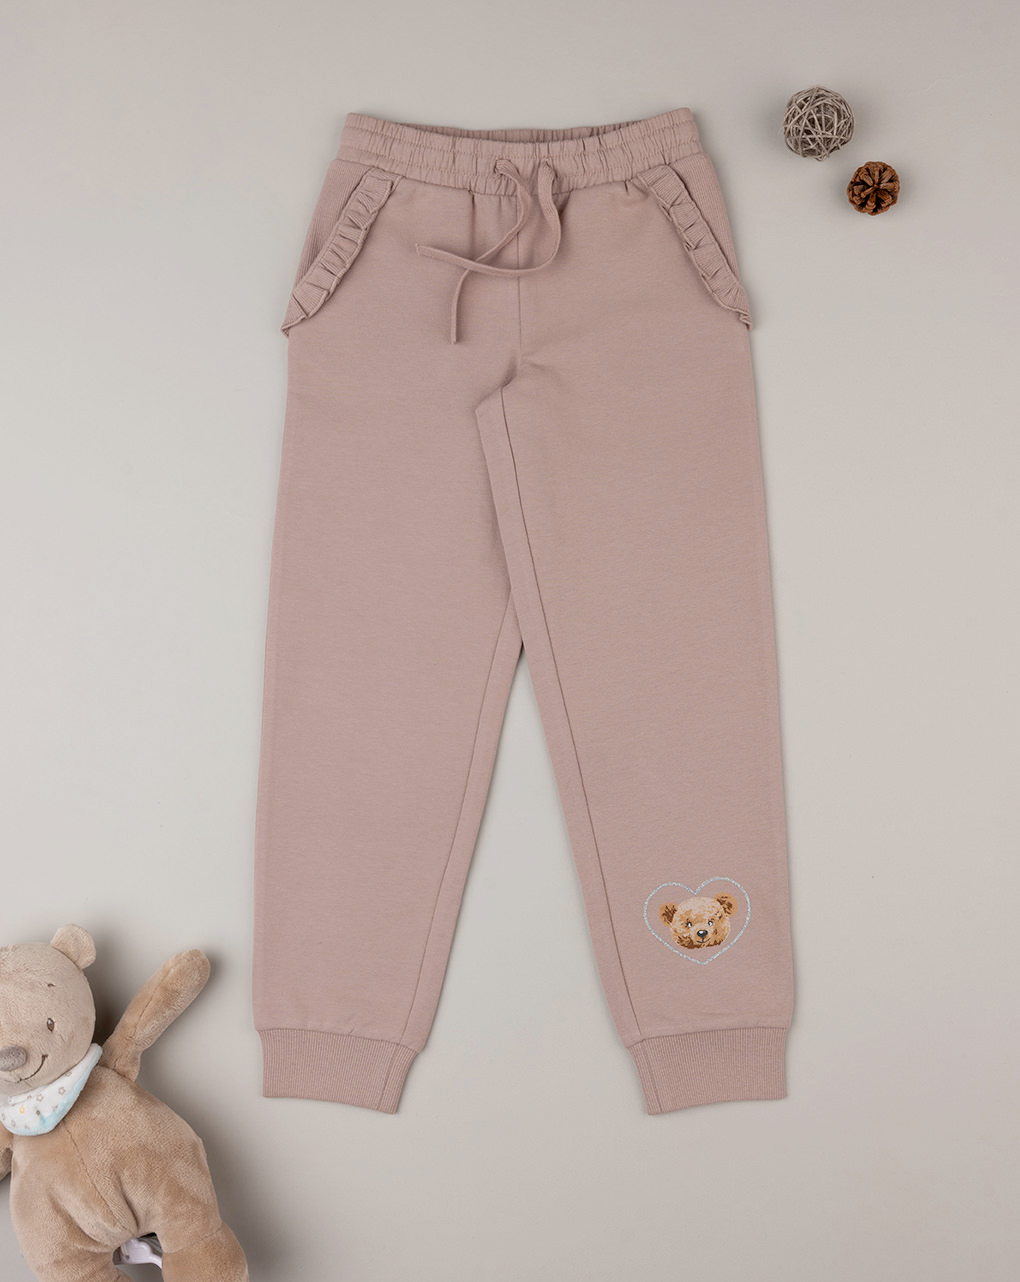 παιδικό παντελόνι φούτερ dusty pink teddy για κορίτσι